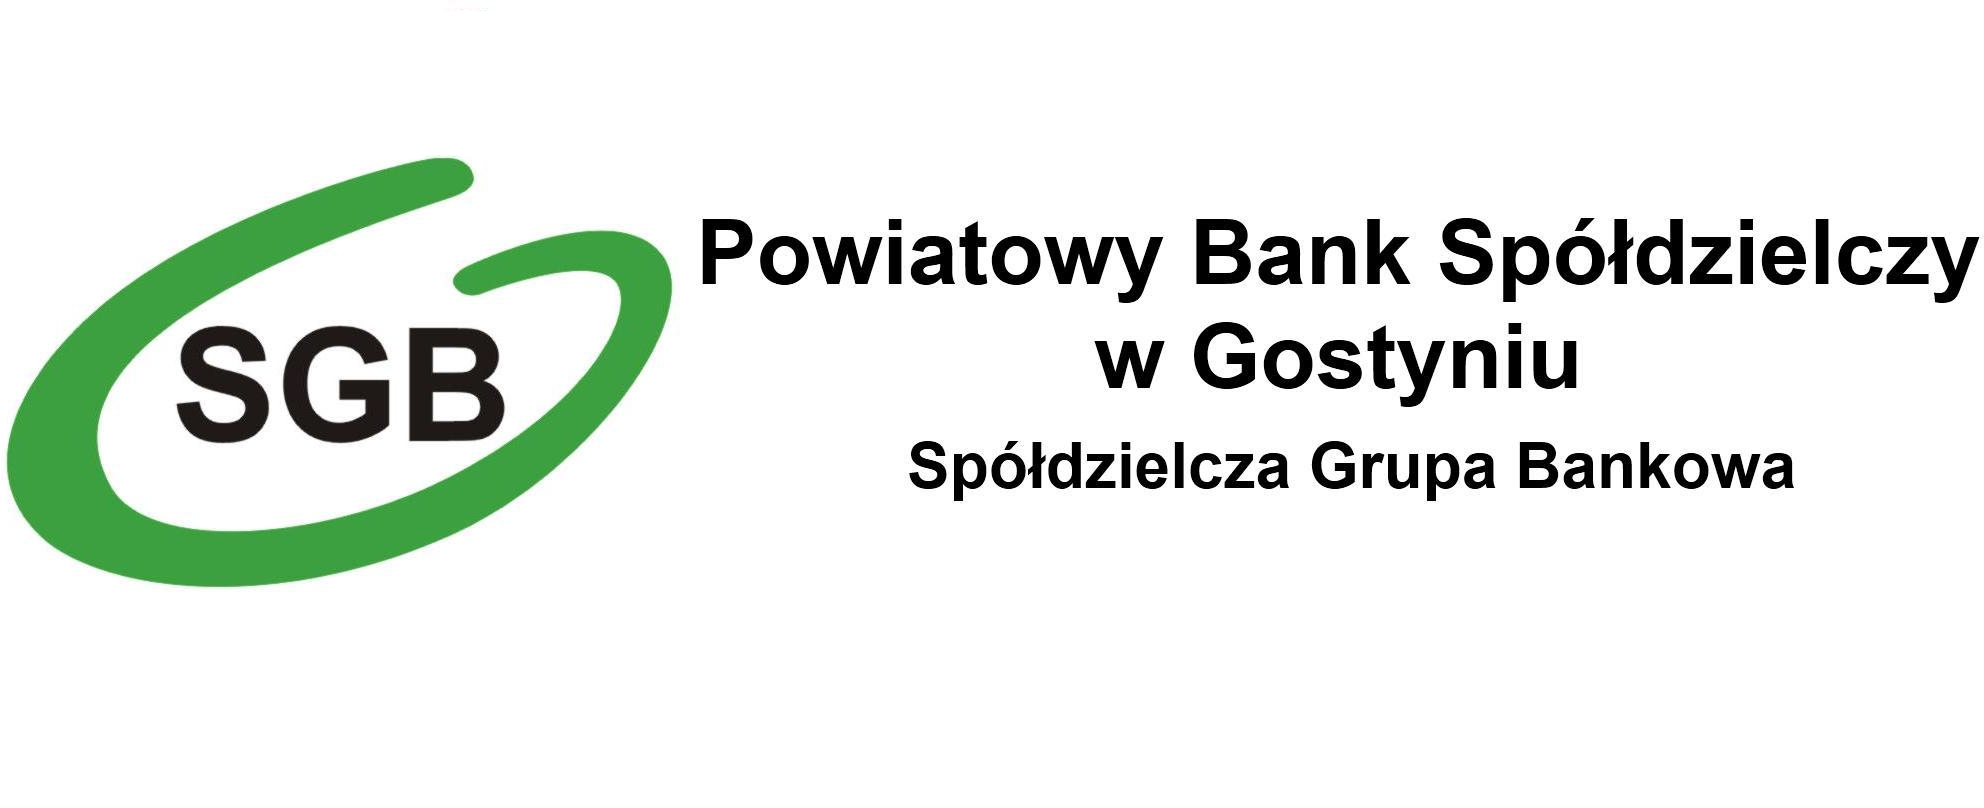 Oferta dla firm - Powiatowy Bank Spółdzielczy w Gostyniu